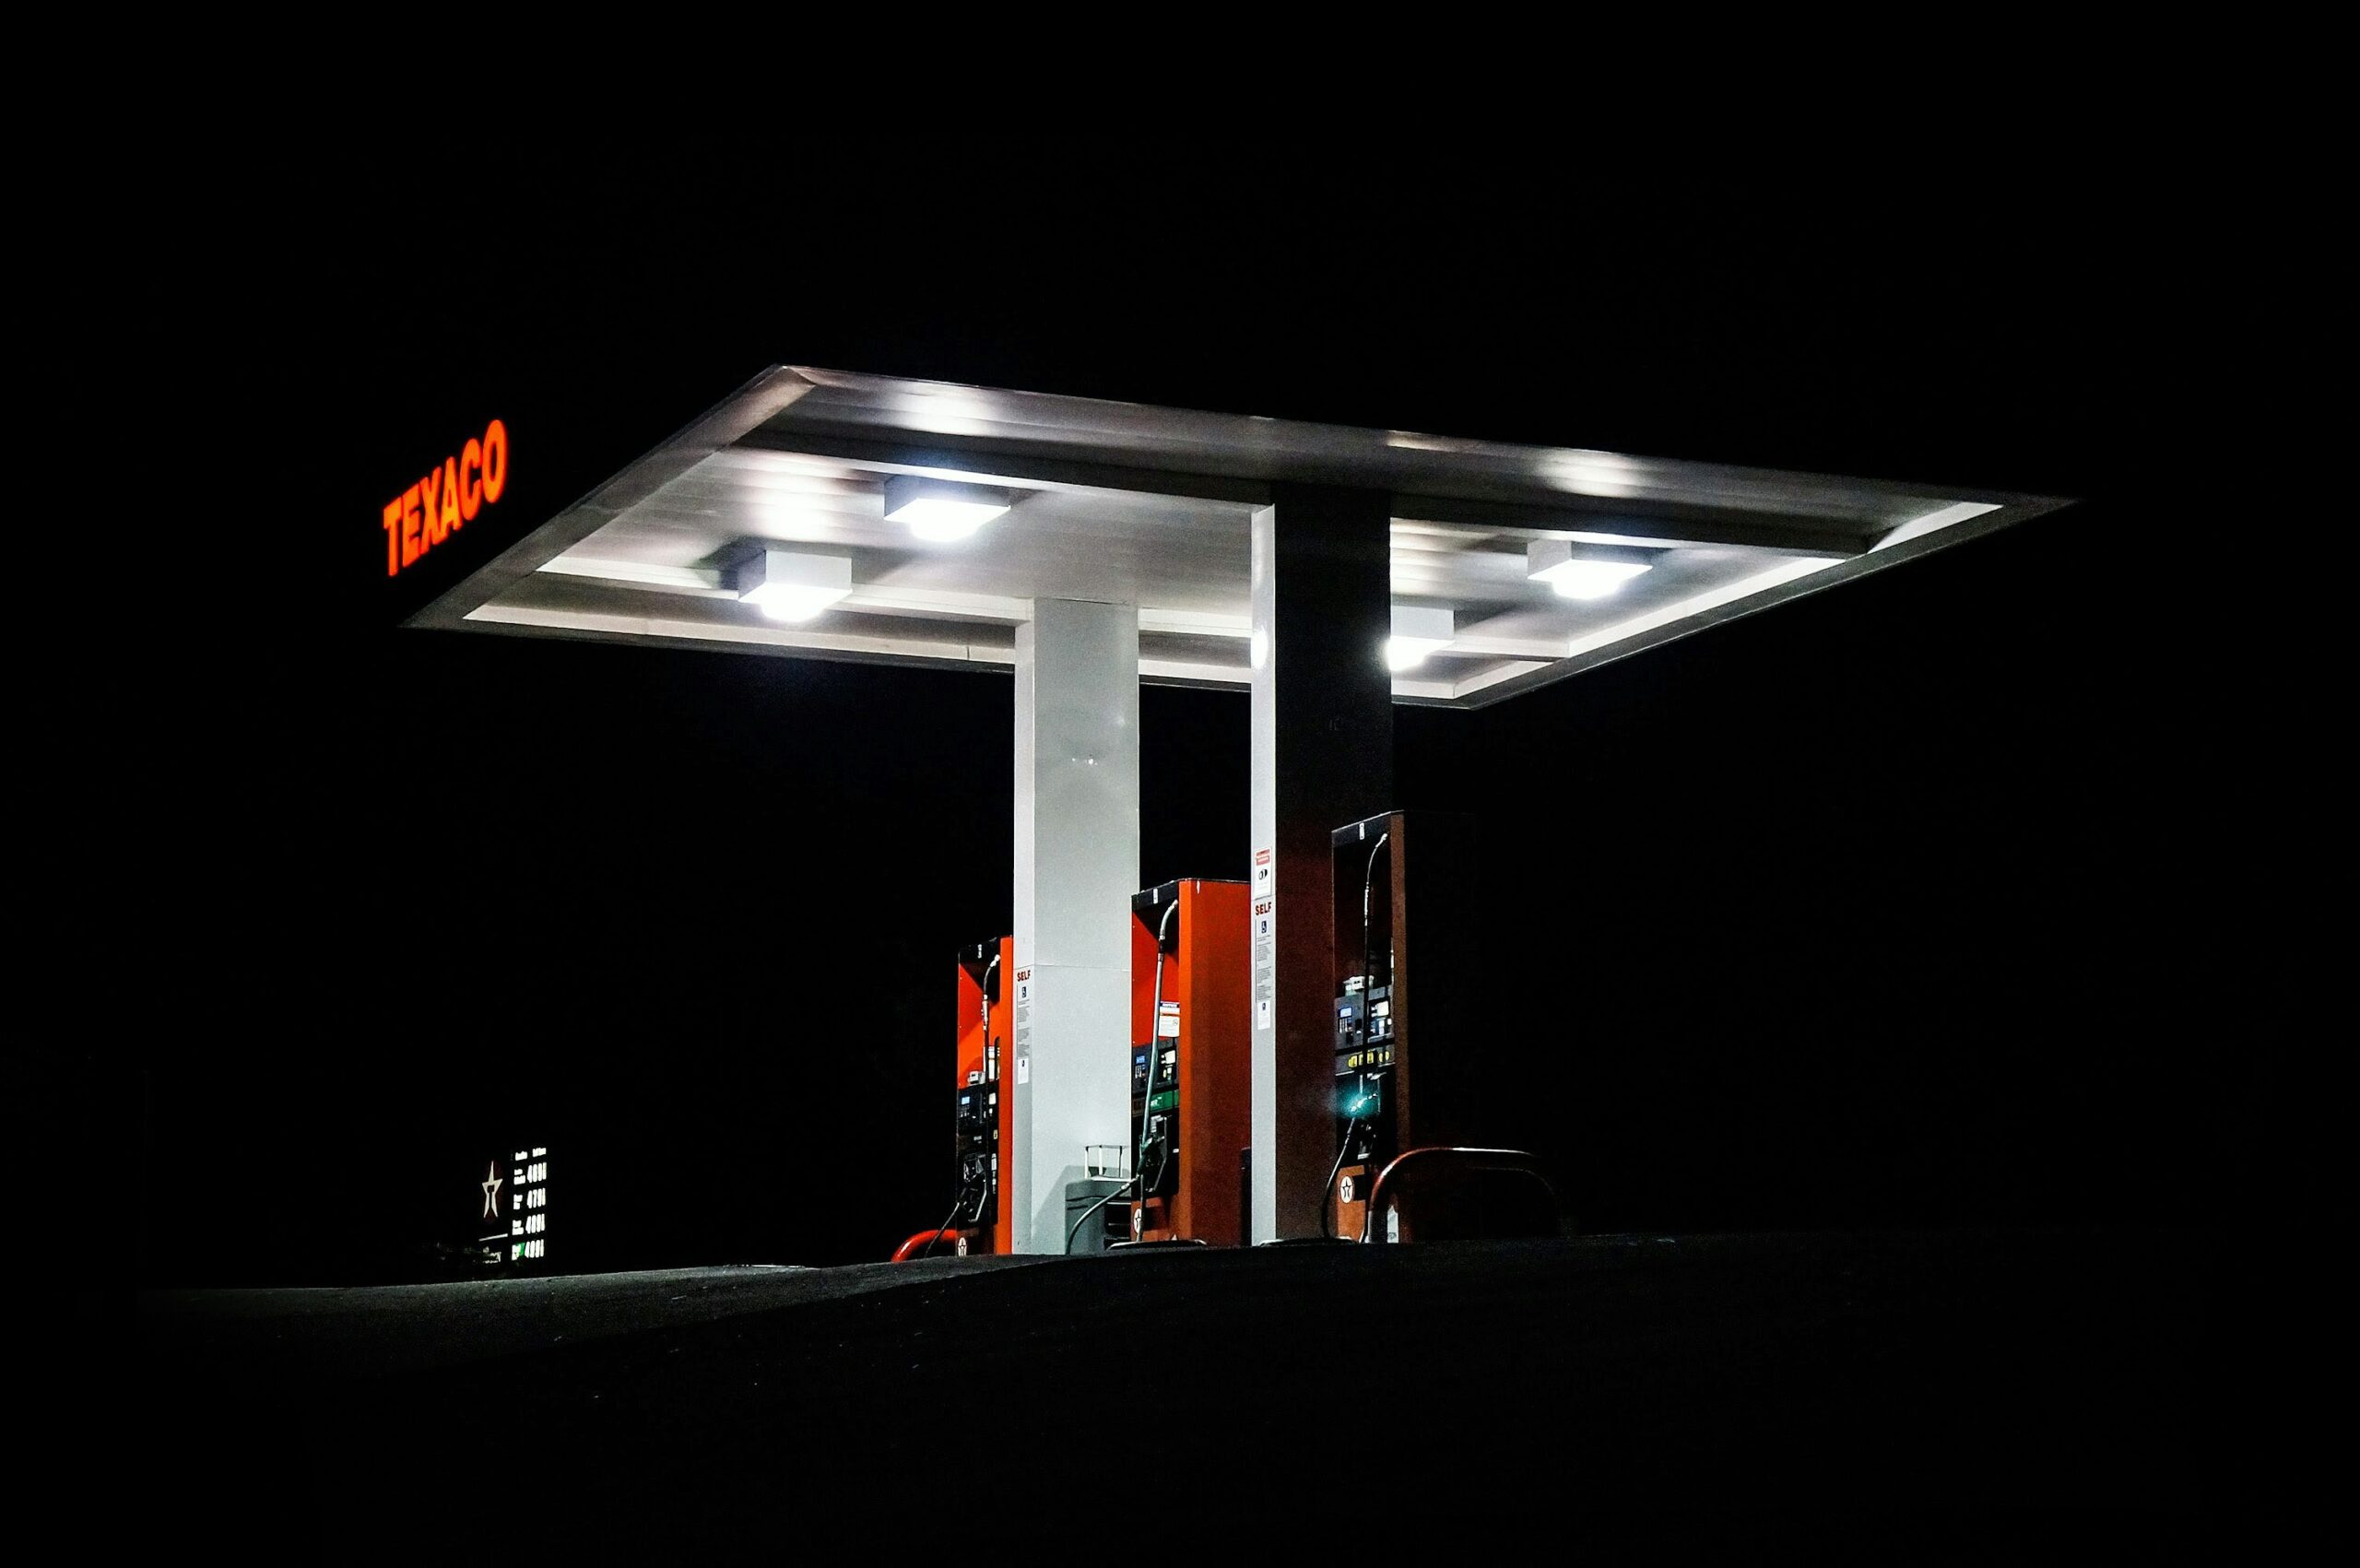 économies de carburant : découvrez des astuces pour réduire votre consommation de carburant et faire des économies sur vos trajets.